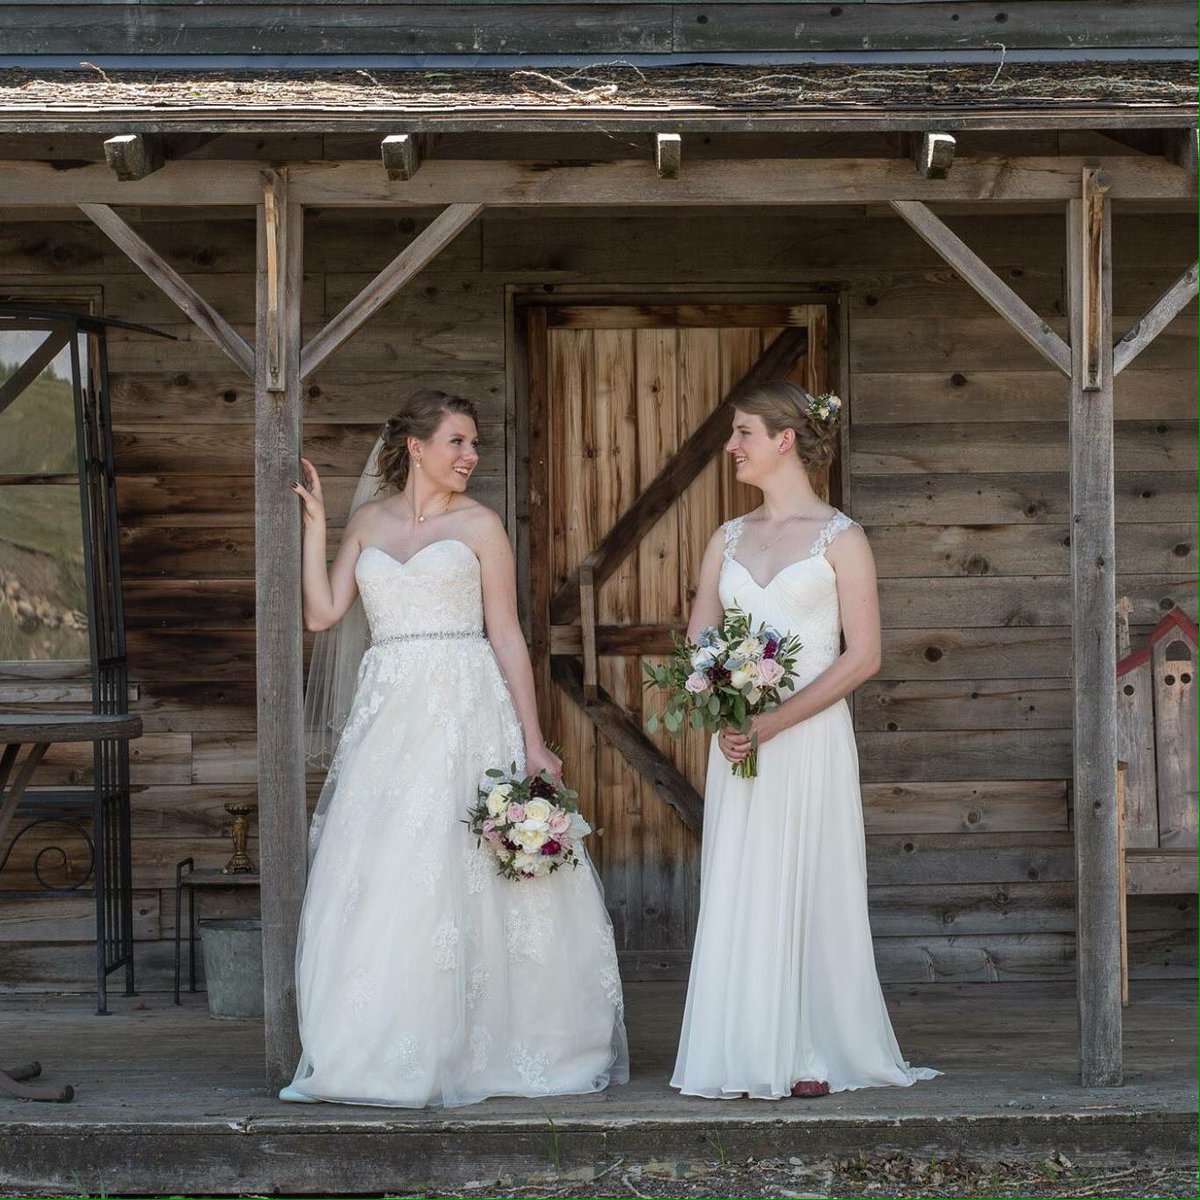 Just got our wedding sneak peak photos 😍 #prairiequeer  #queerwedding